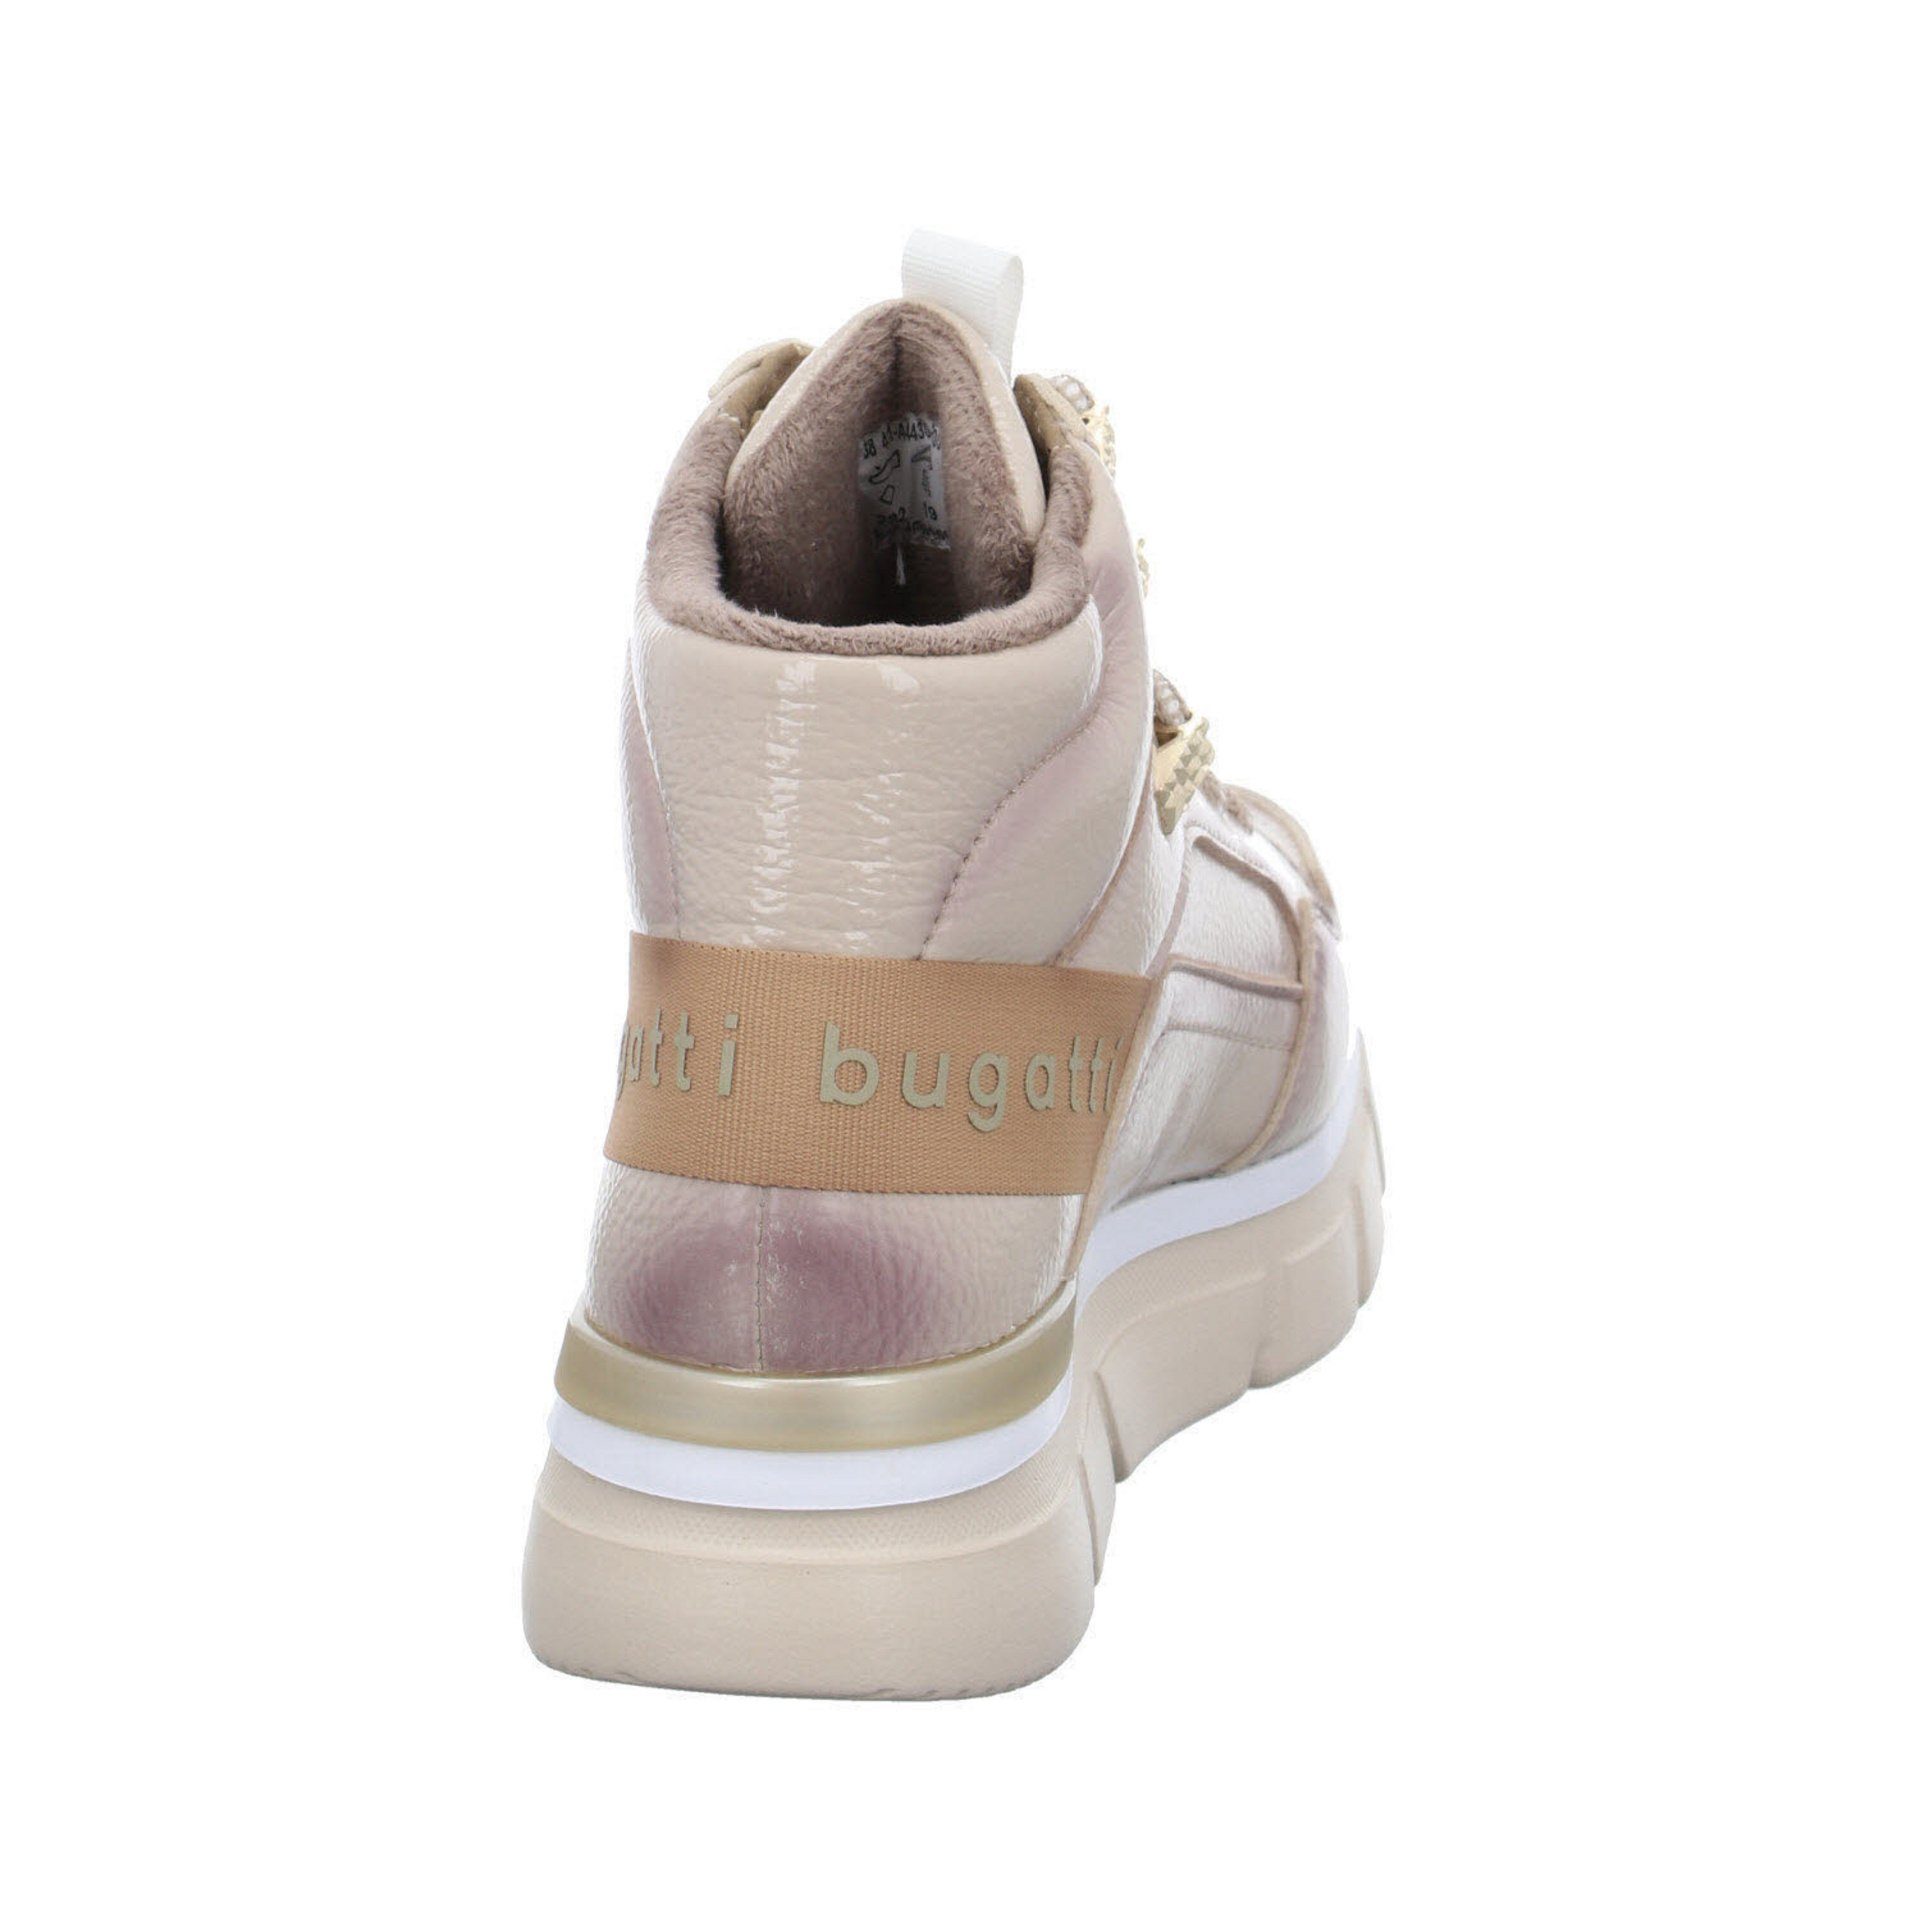 Lian bugatti Damen Schuhe Sneaker High-Top Sneaker Synthetikkombination Sneaker